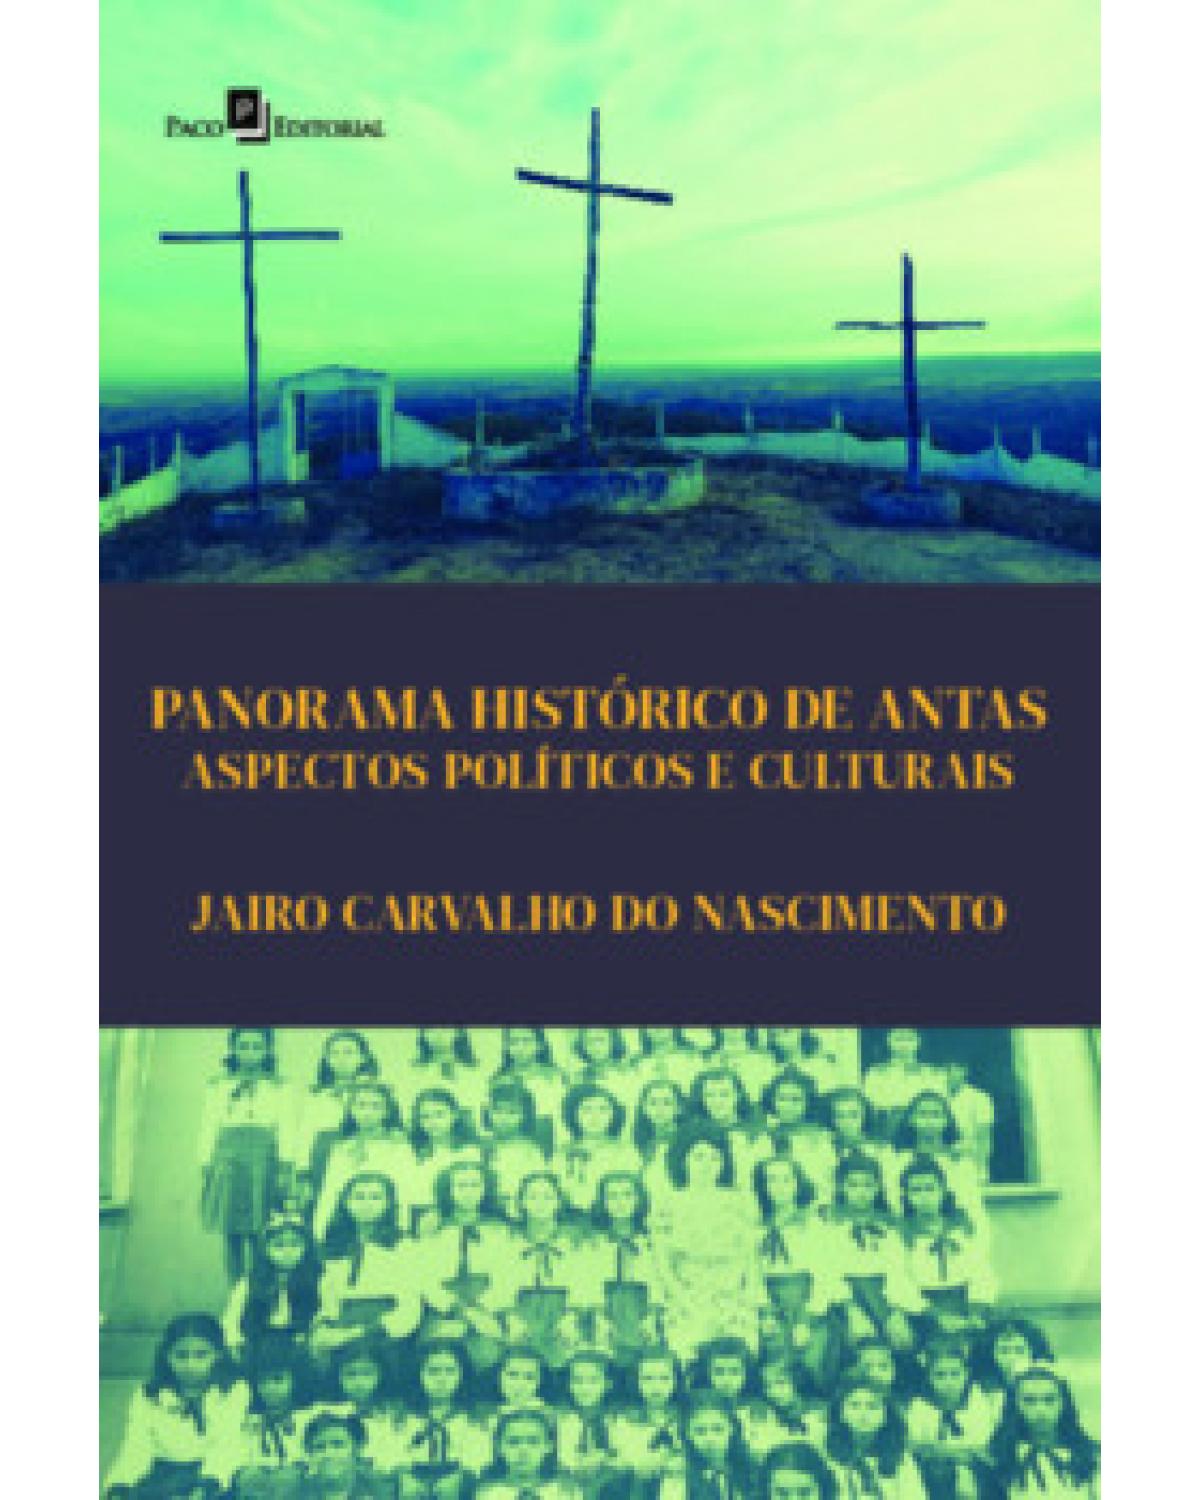 Panorama histórico de Antas - aspectos políticos e culturais - 1ª Edição | 2022